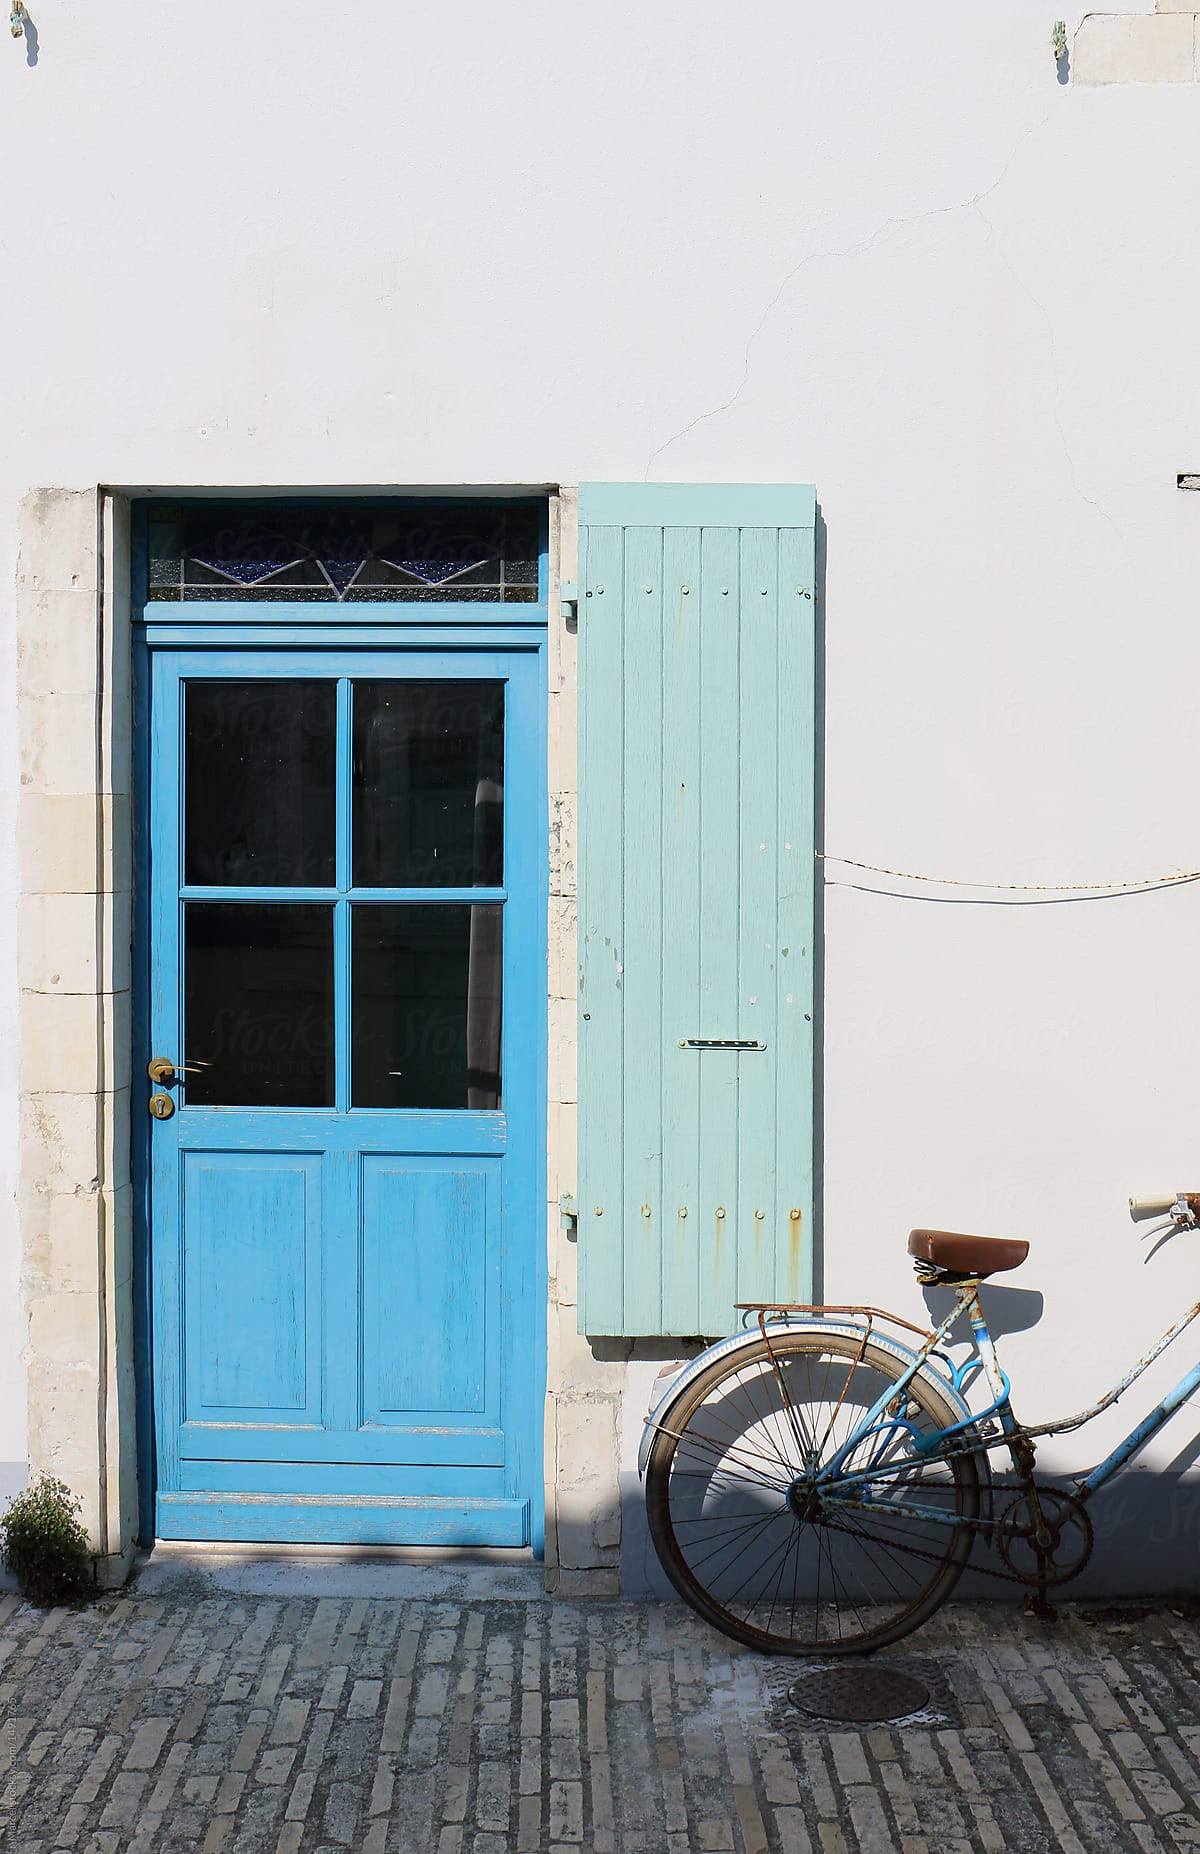 Old bike and blue door